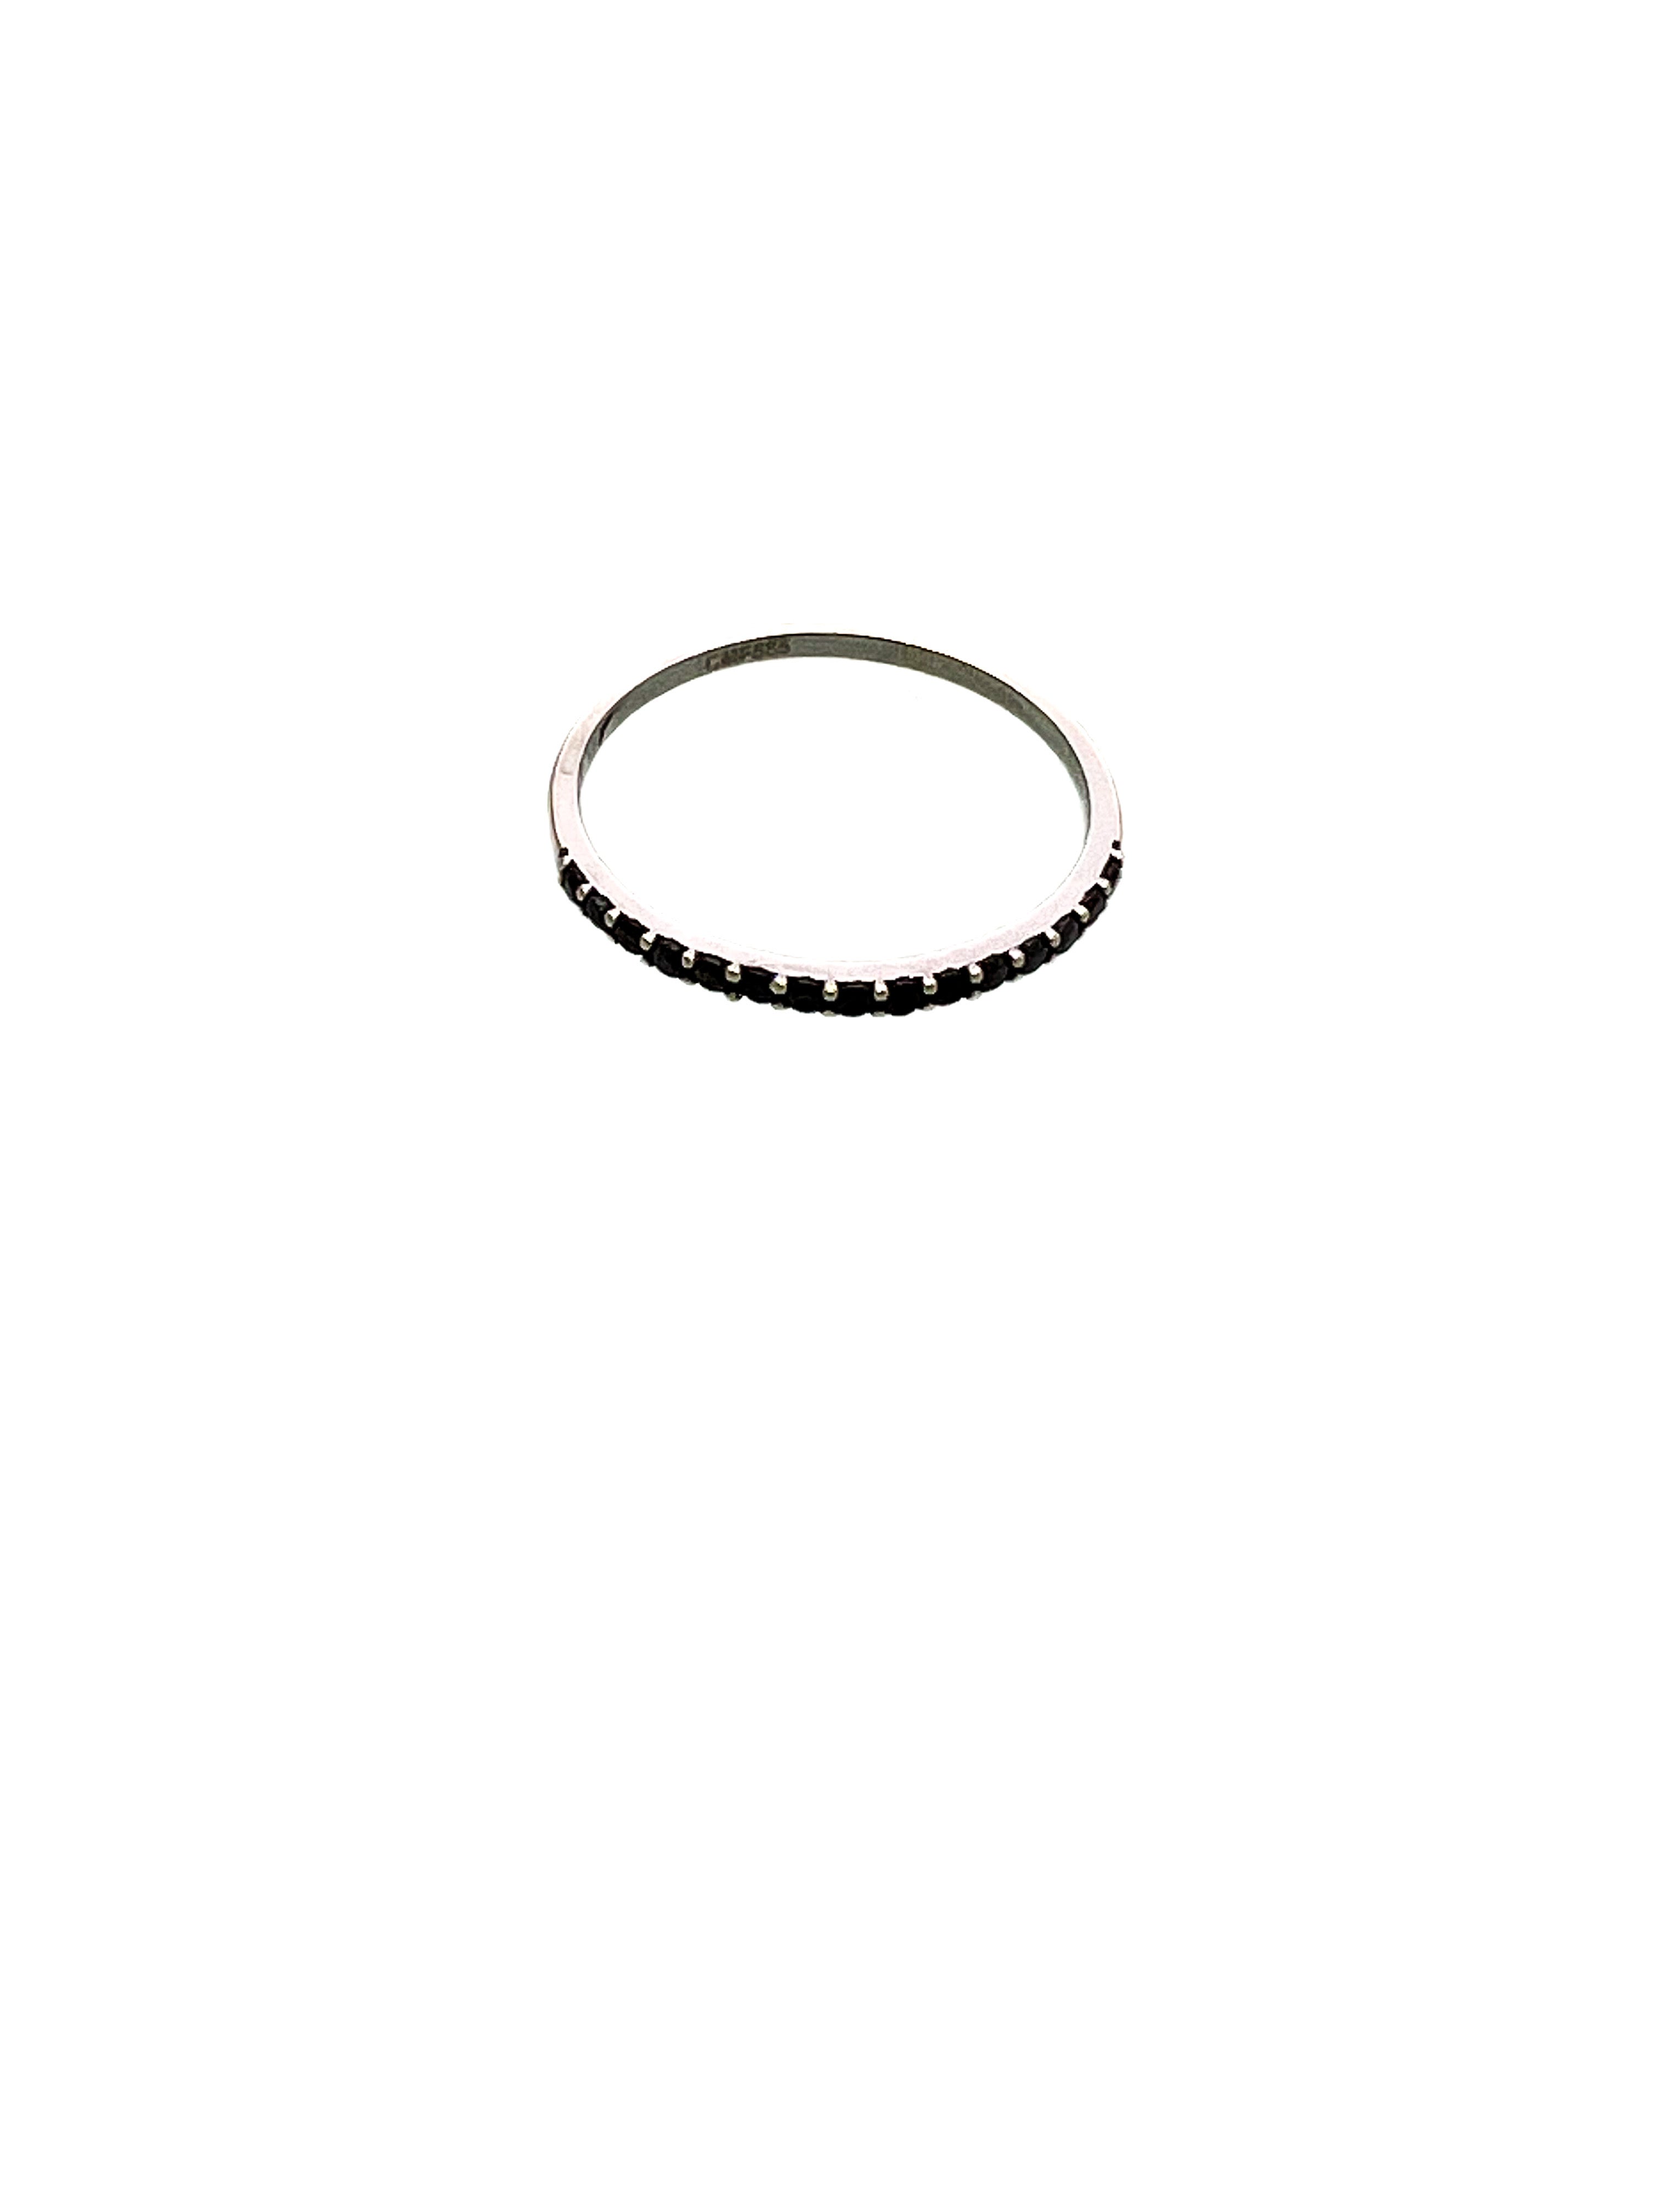 טבעת חישוק דקה זהב לבן 14 קארט משובצת זירקונים שחורים